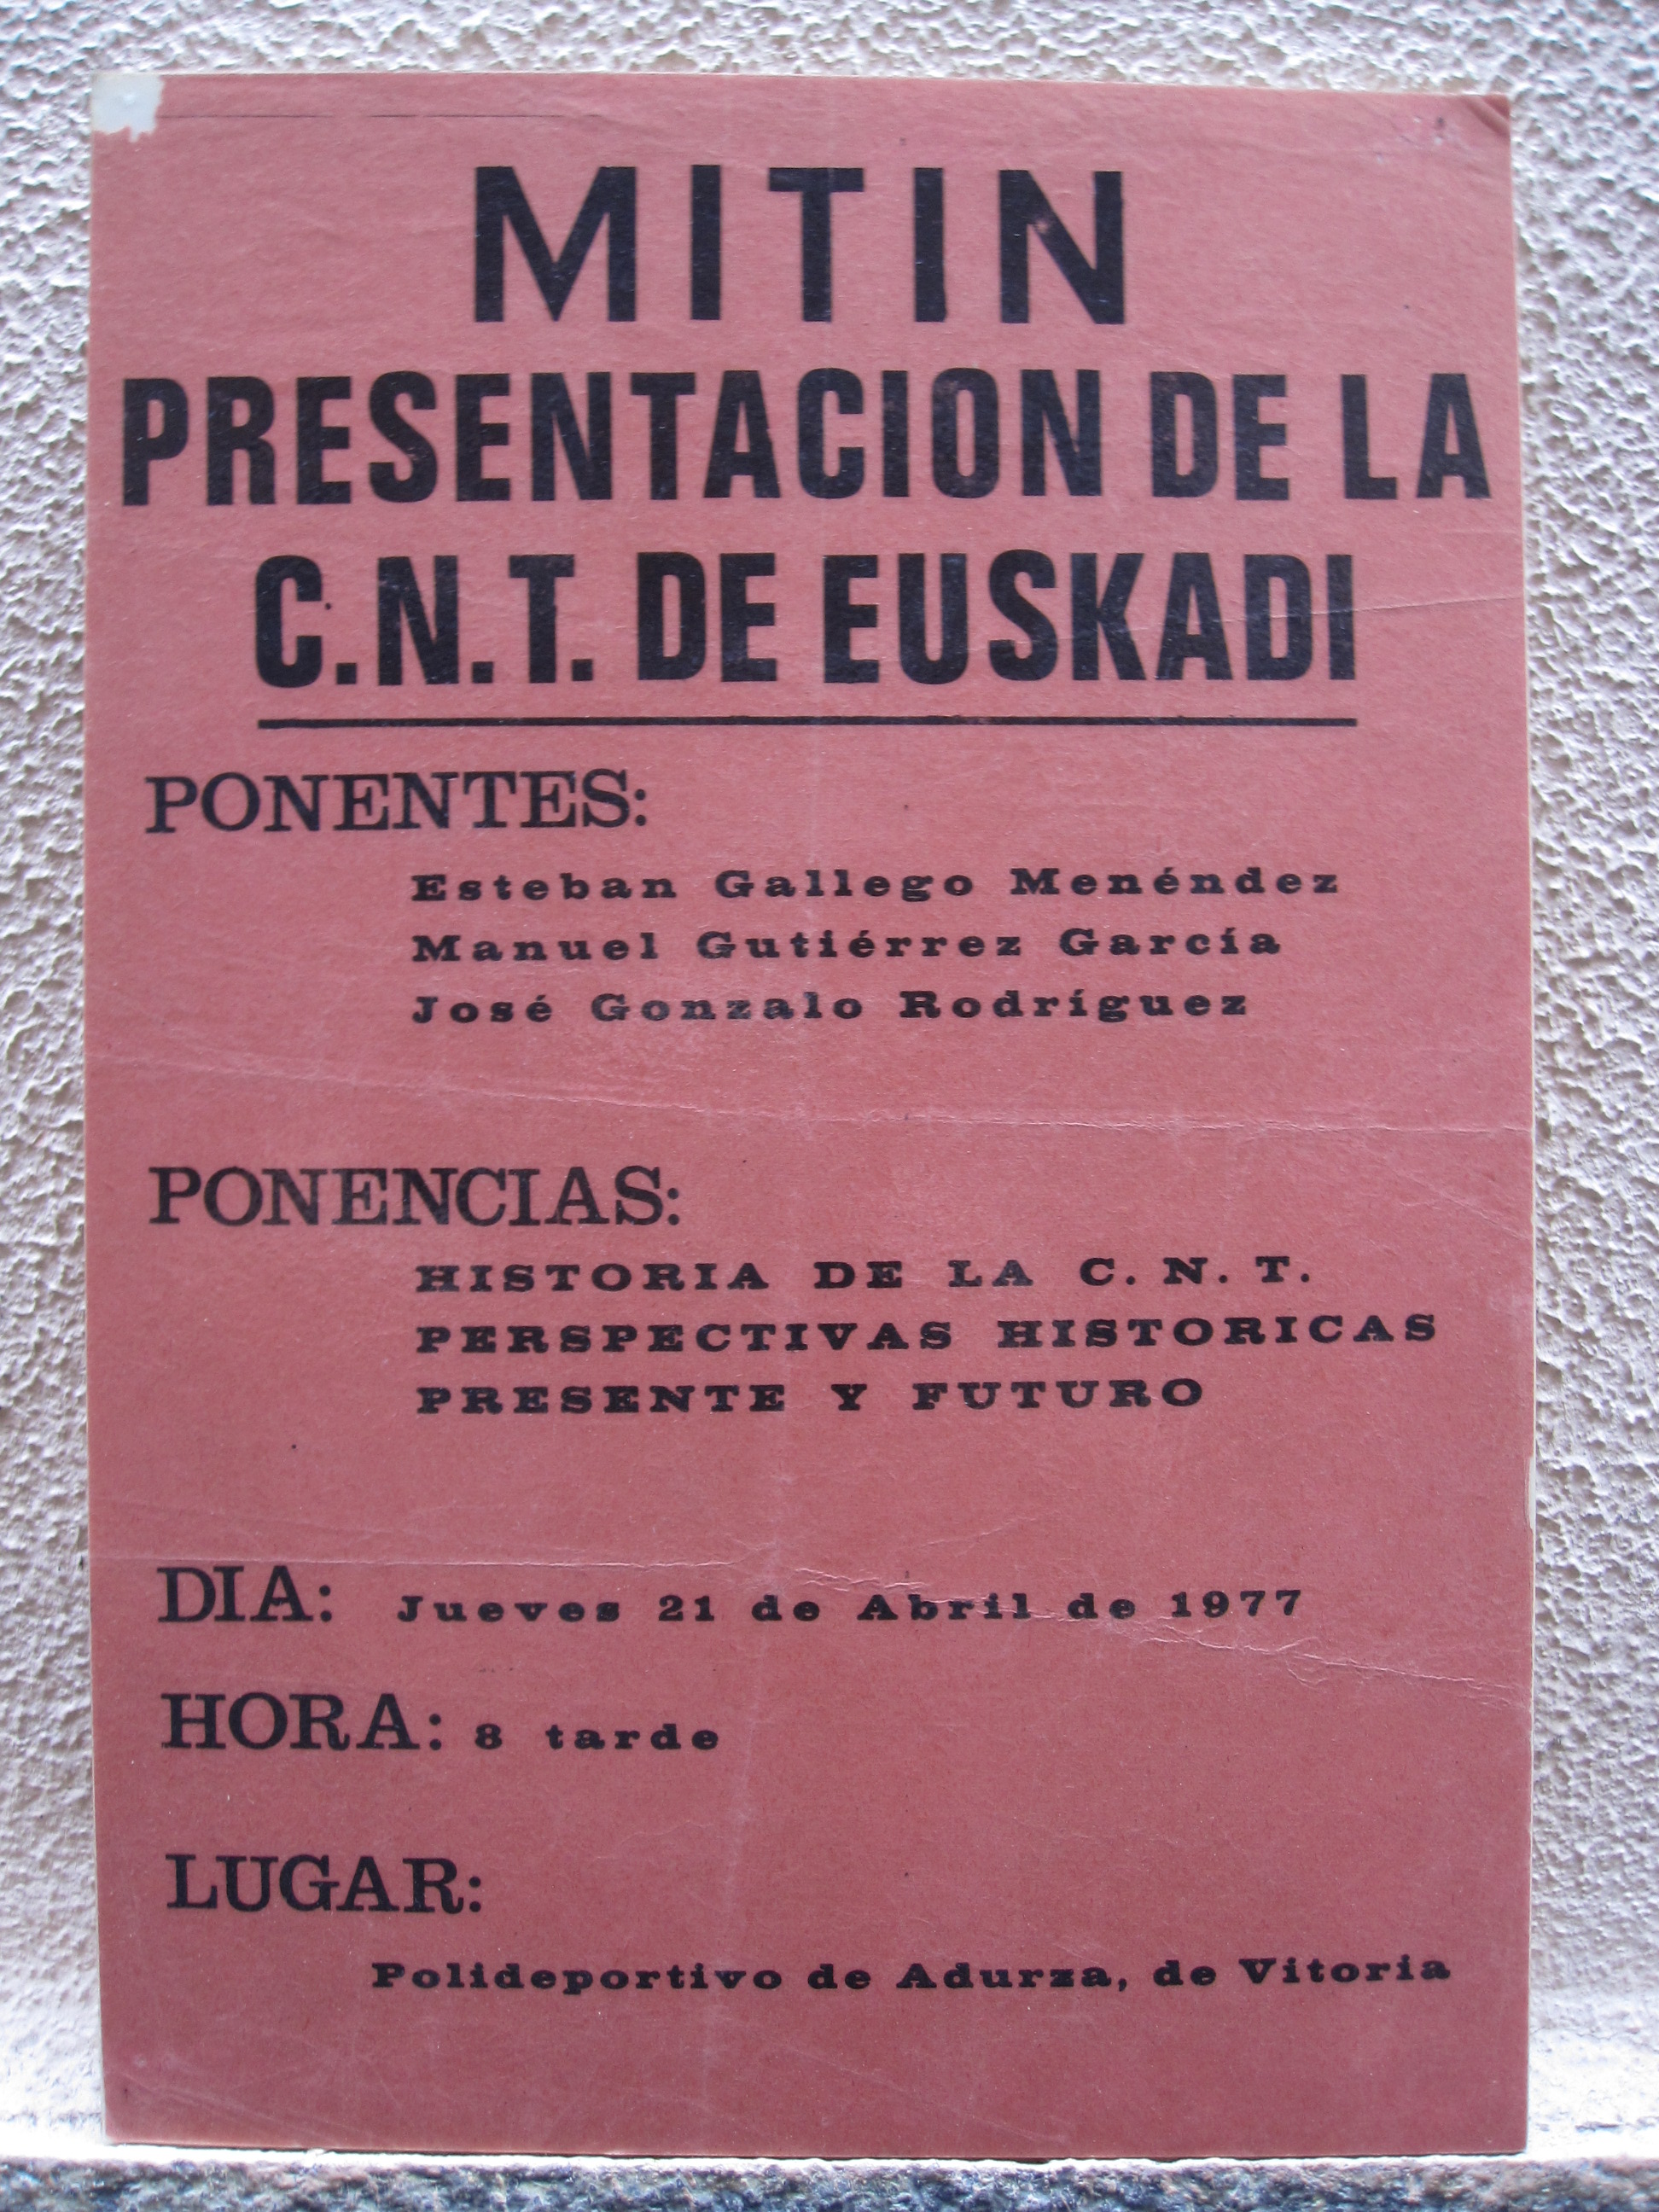 Cartel mitin presentación de la CNT de Euskadi, 21-4-1977